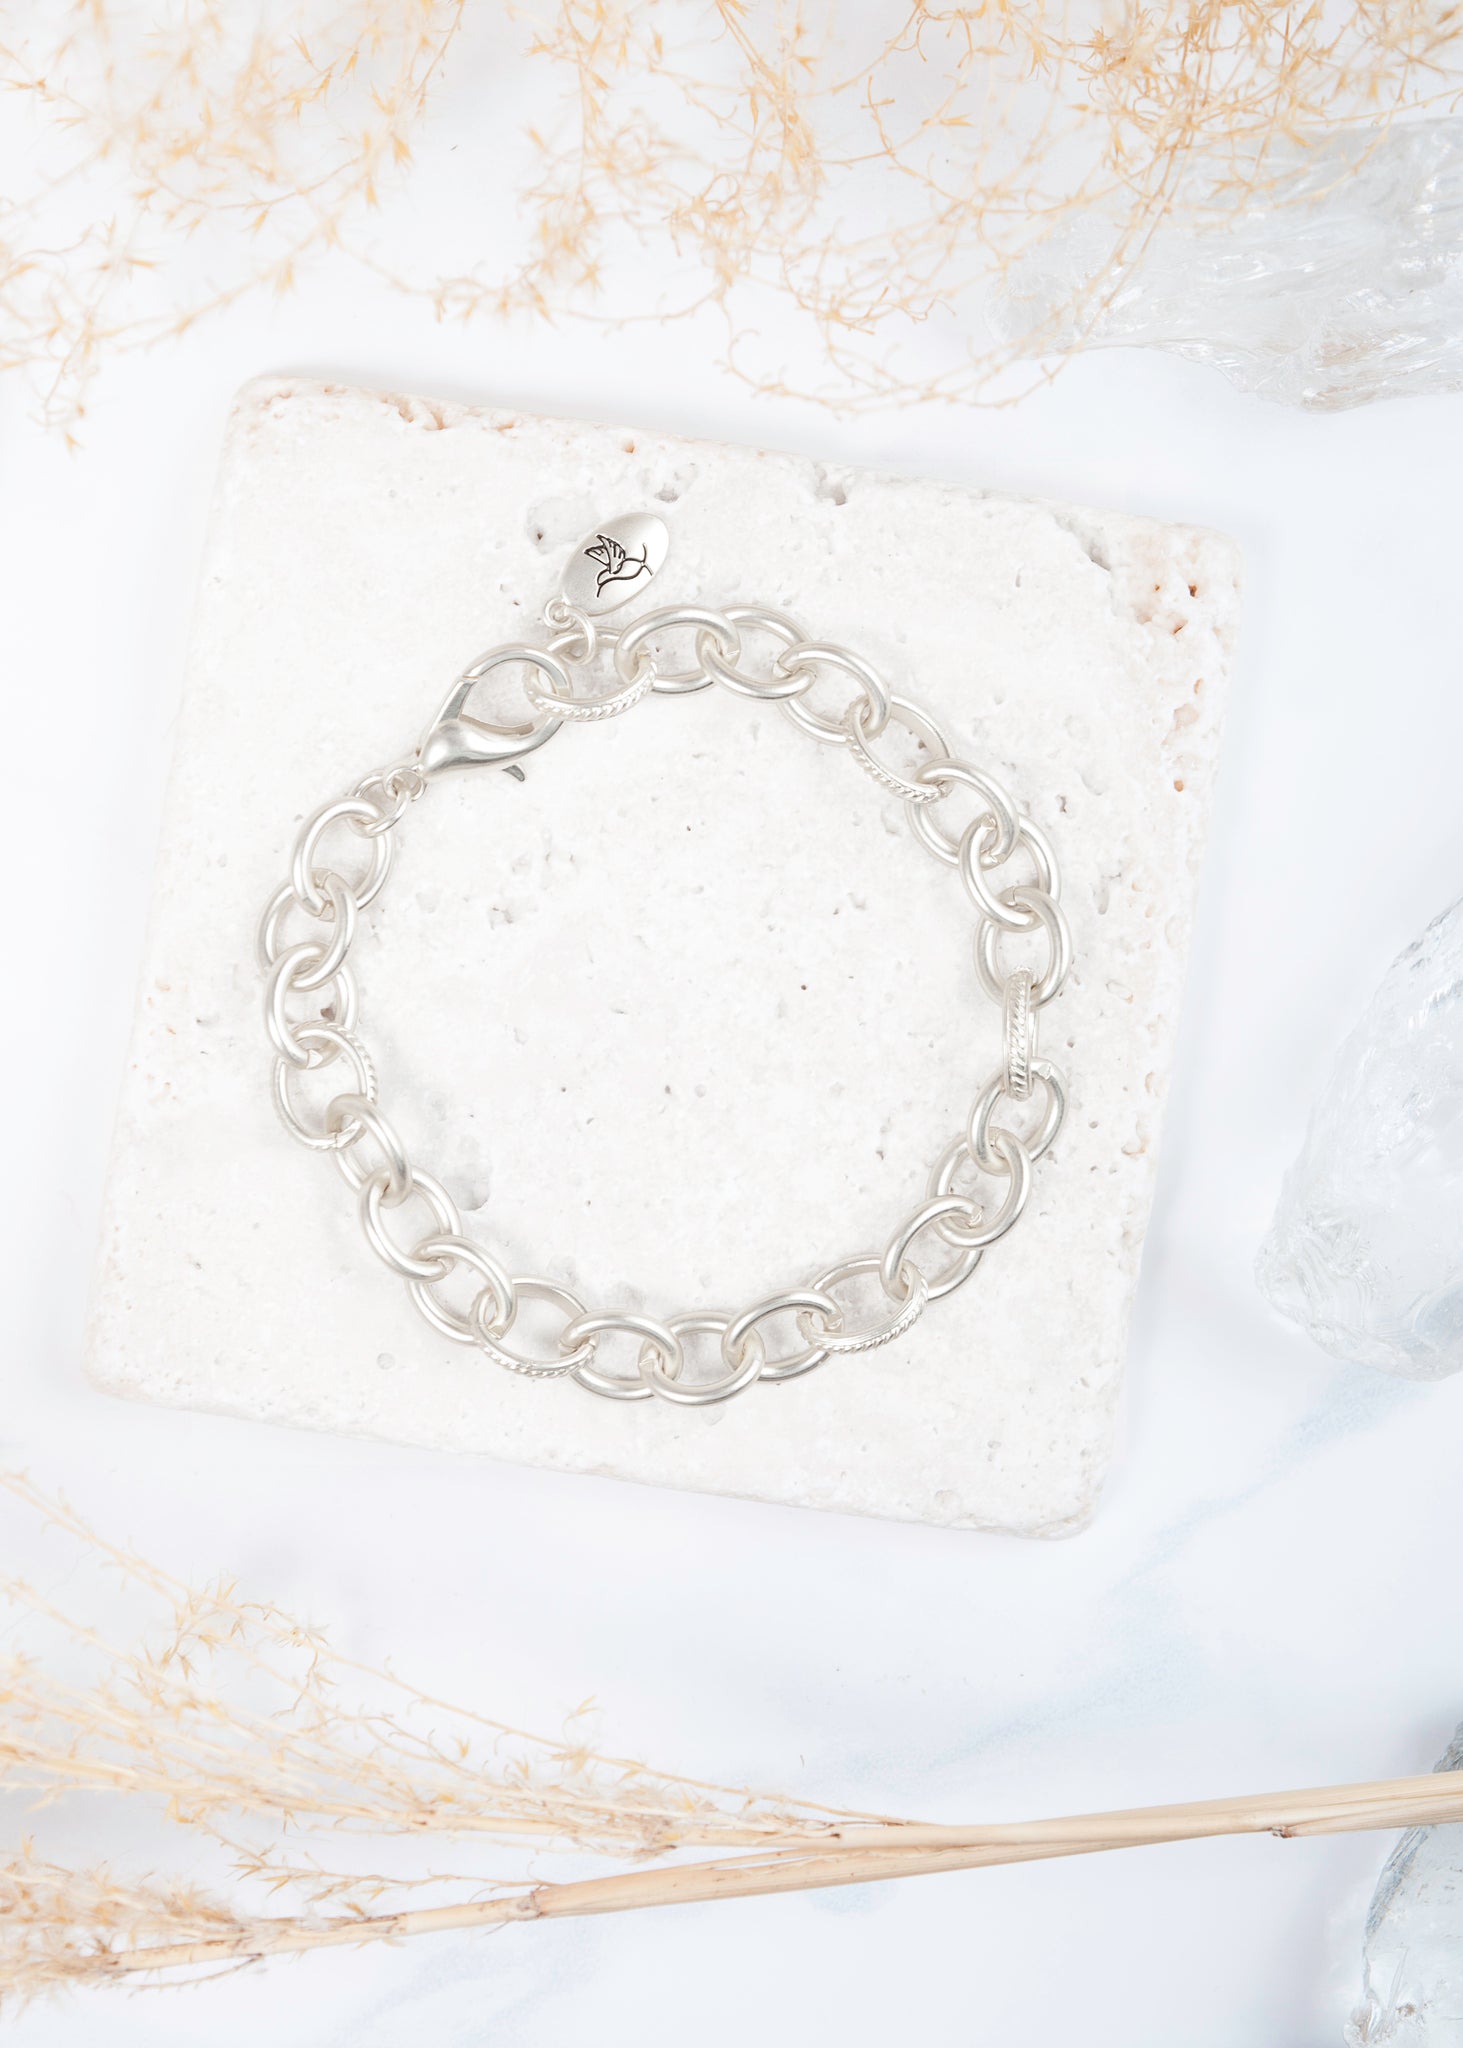 Heartfelt Emotions Chain Bracelet - Matte Silver